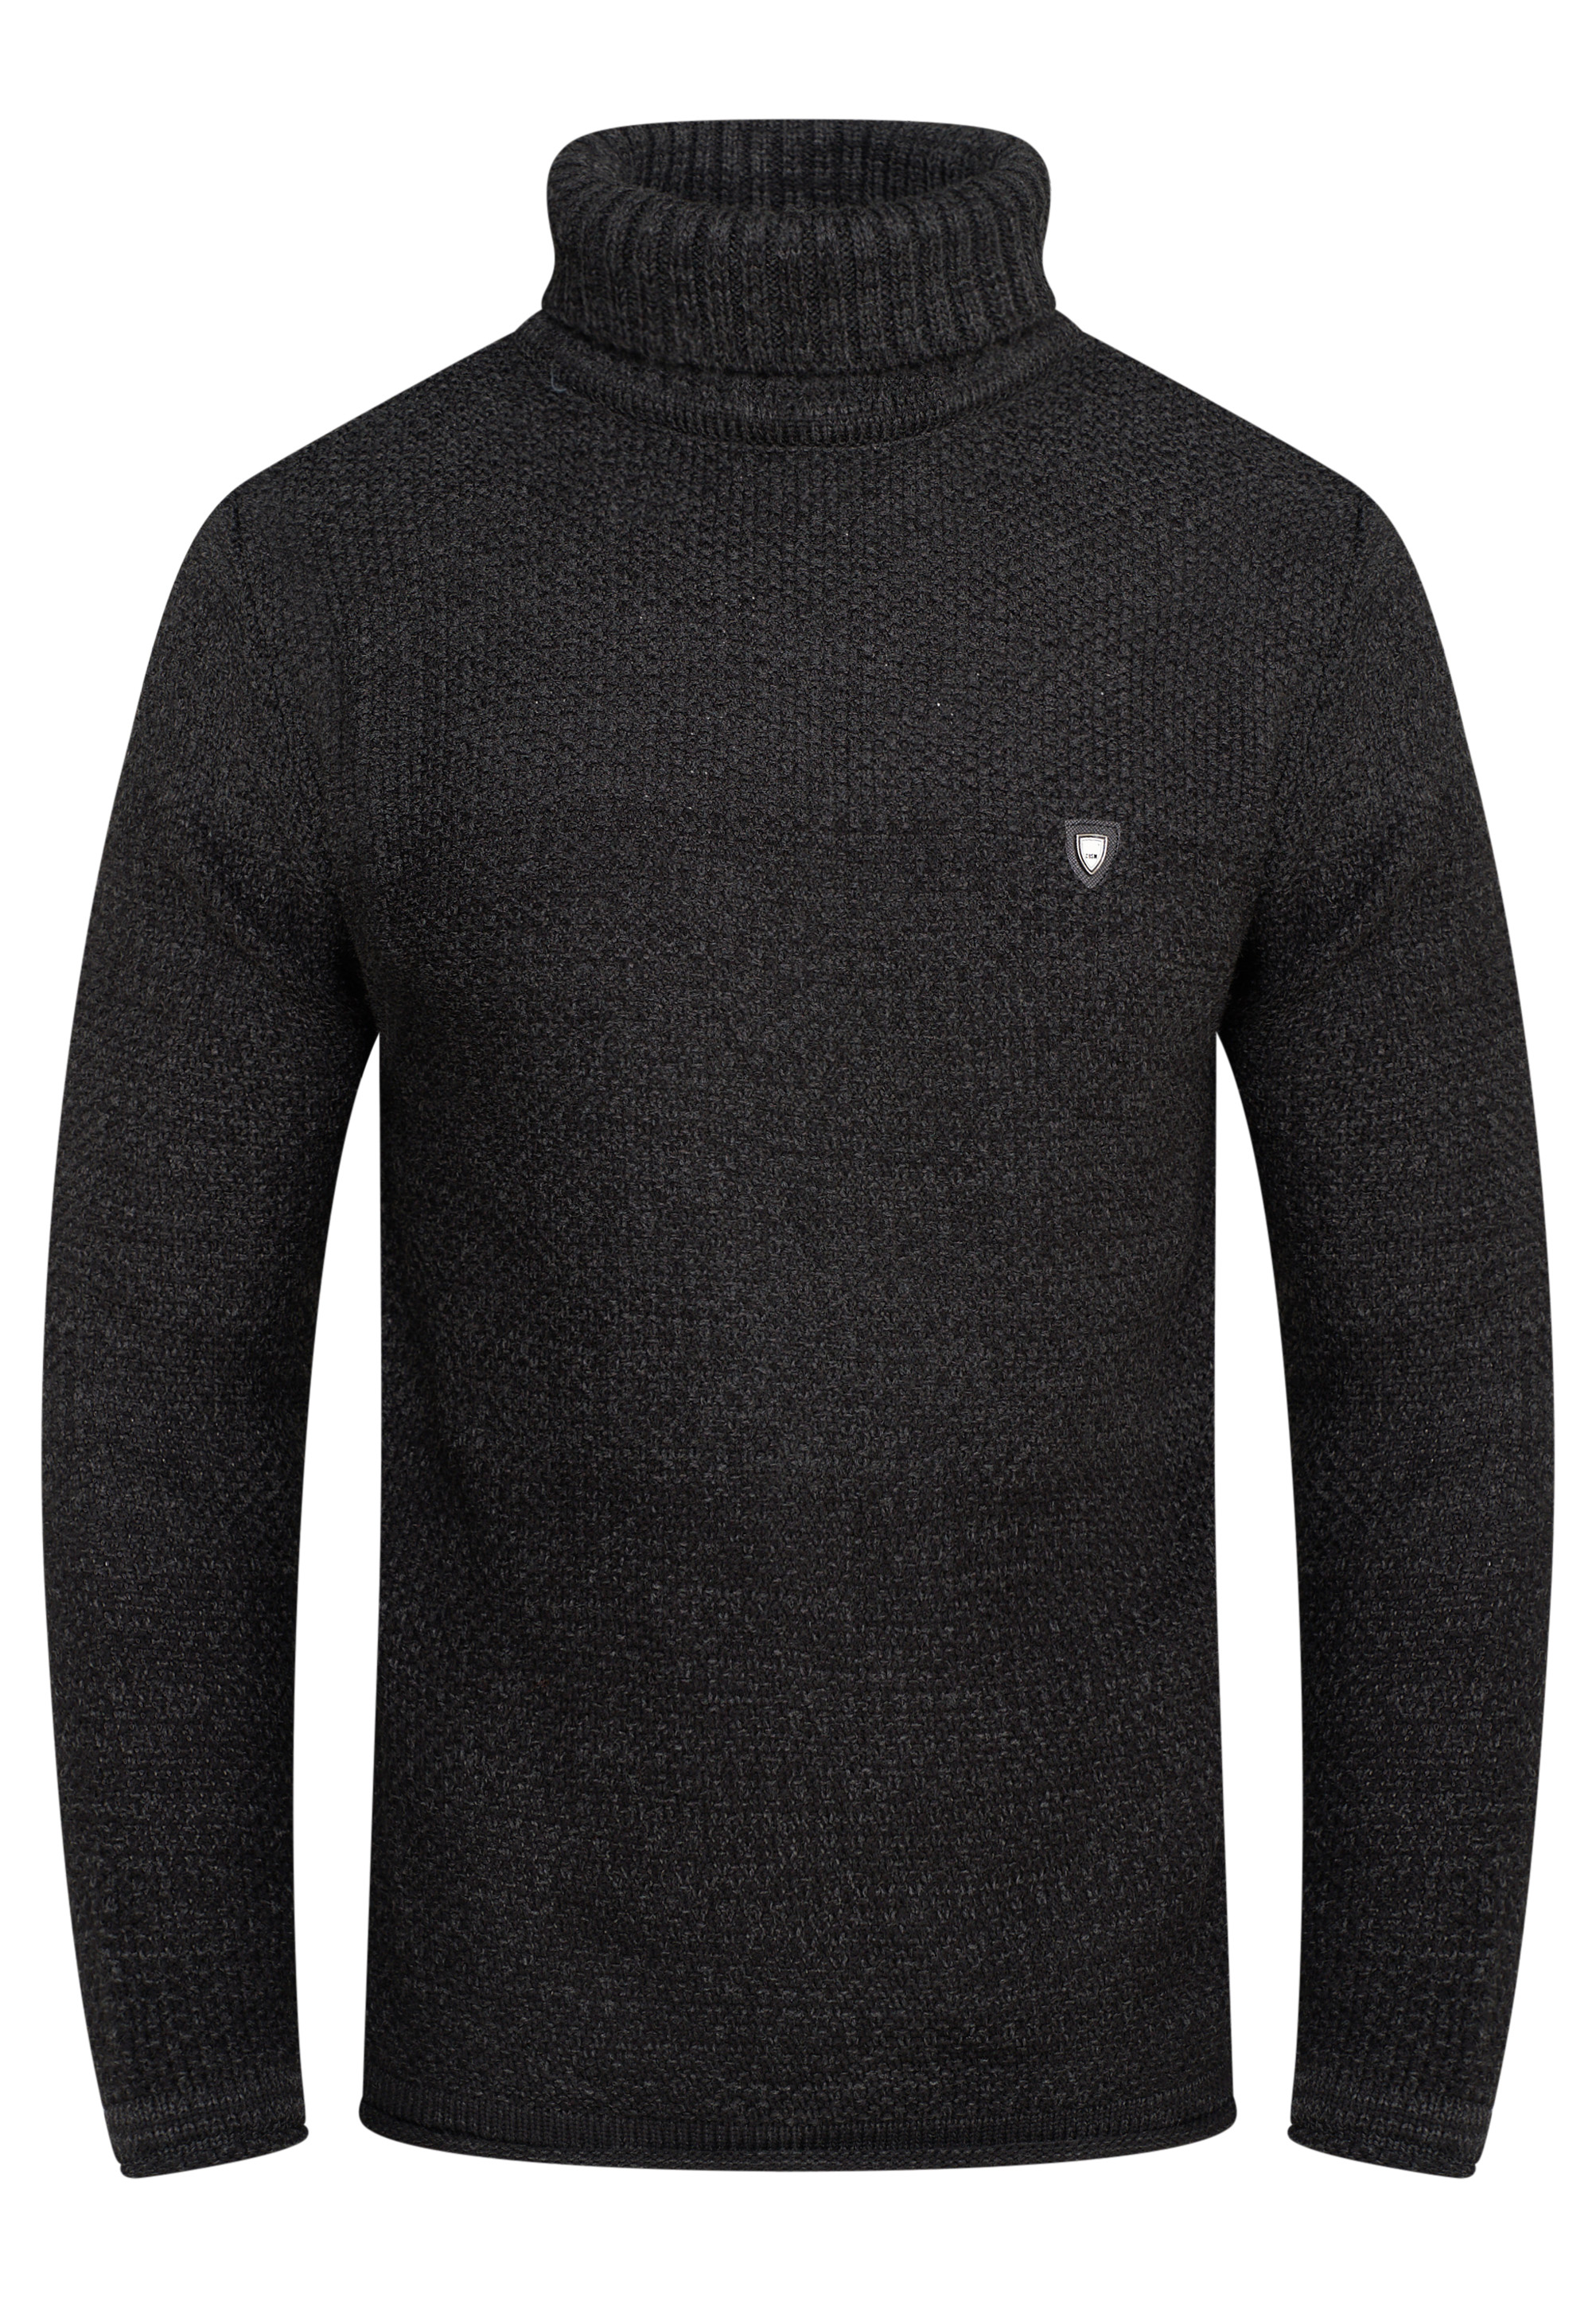 Пуловер behype Rollkragen MKBloro, темно серый